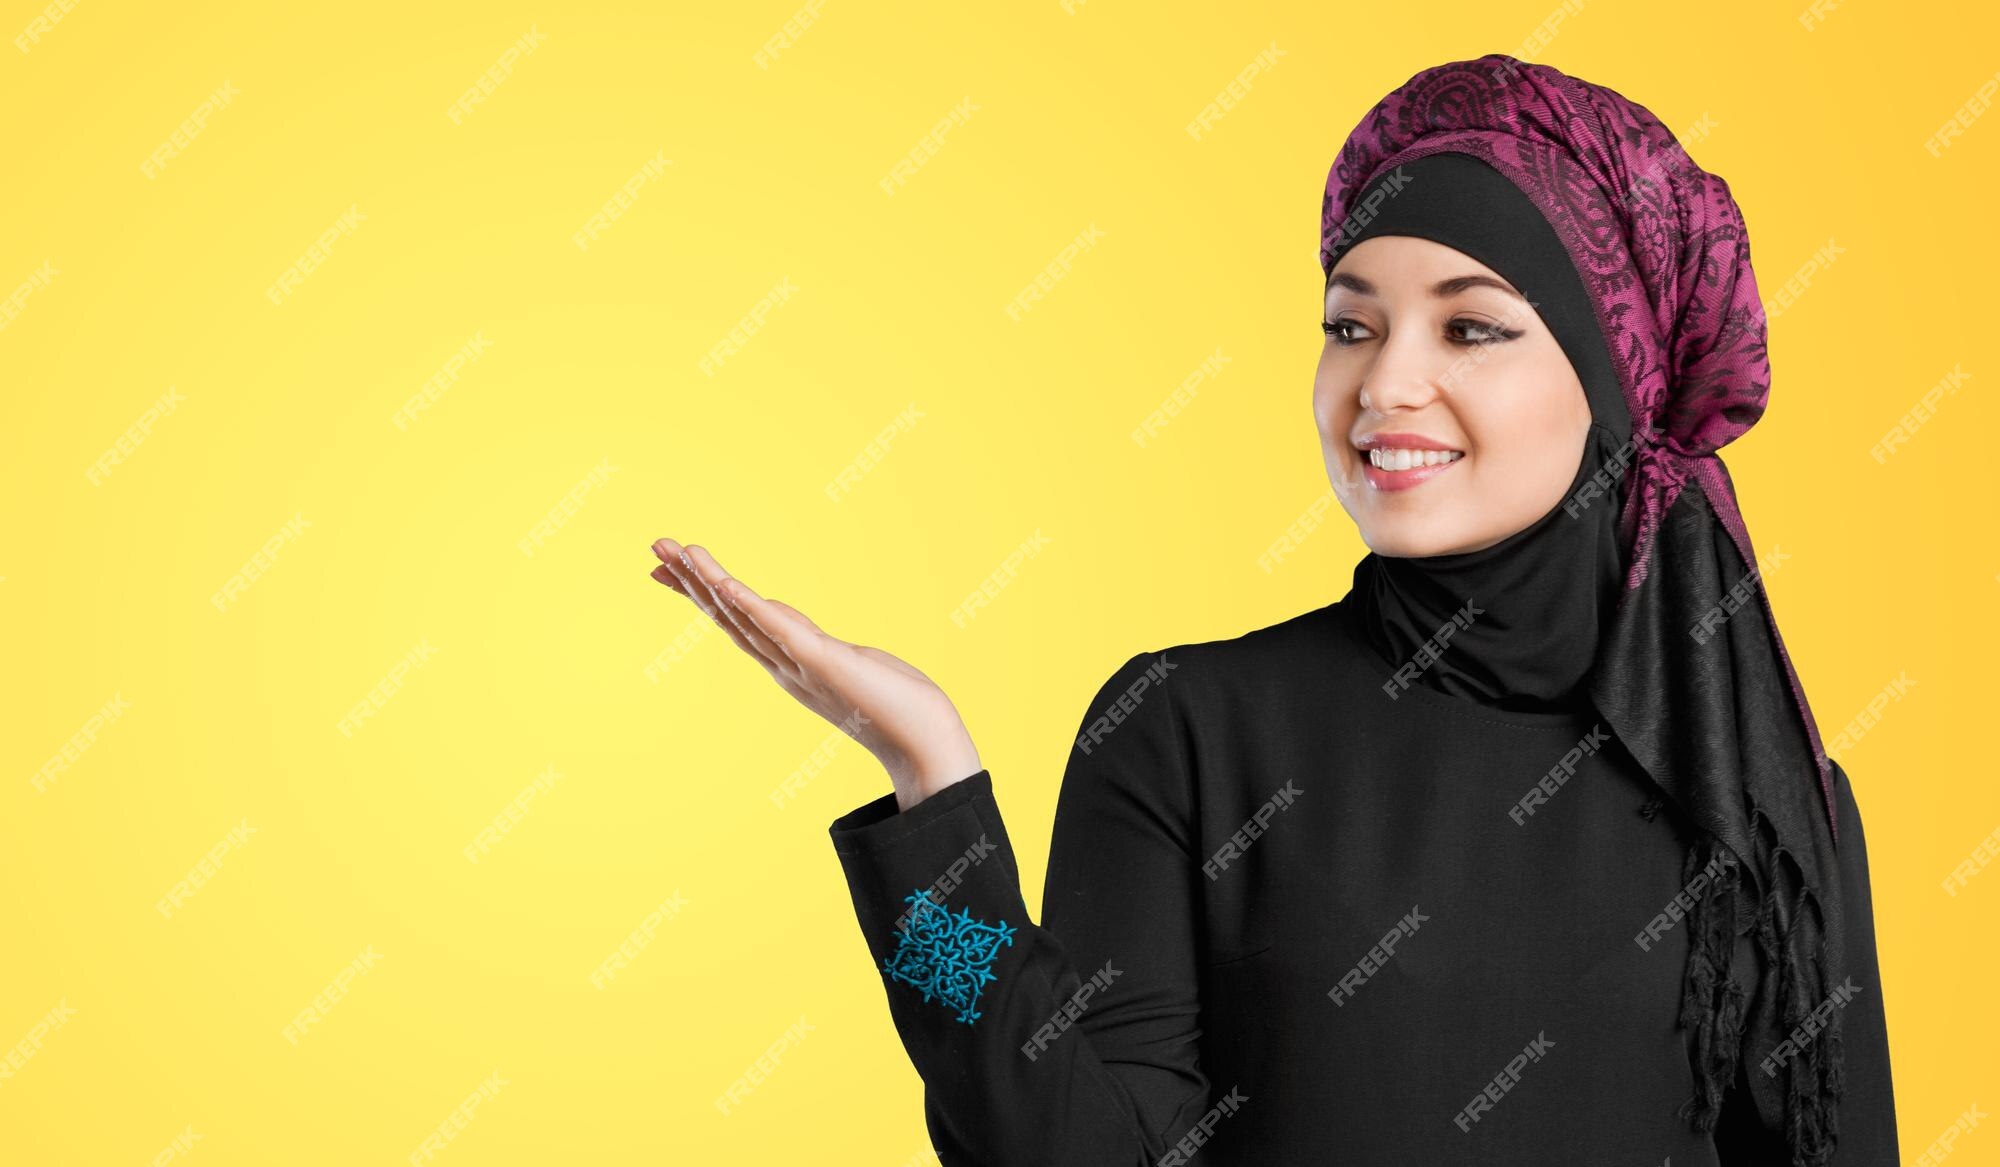 de estudio de una mujer joven con ropa árabe tradicional. ella está sosteniendo su mano a un lado | Foto Premium